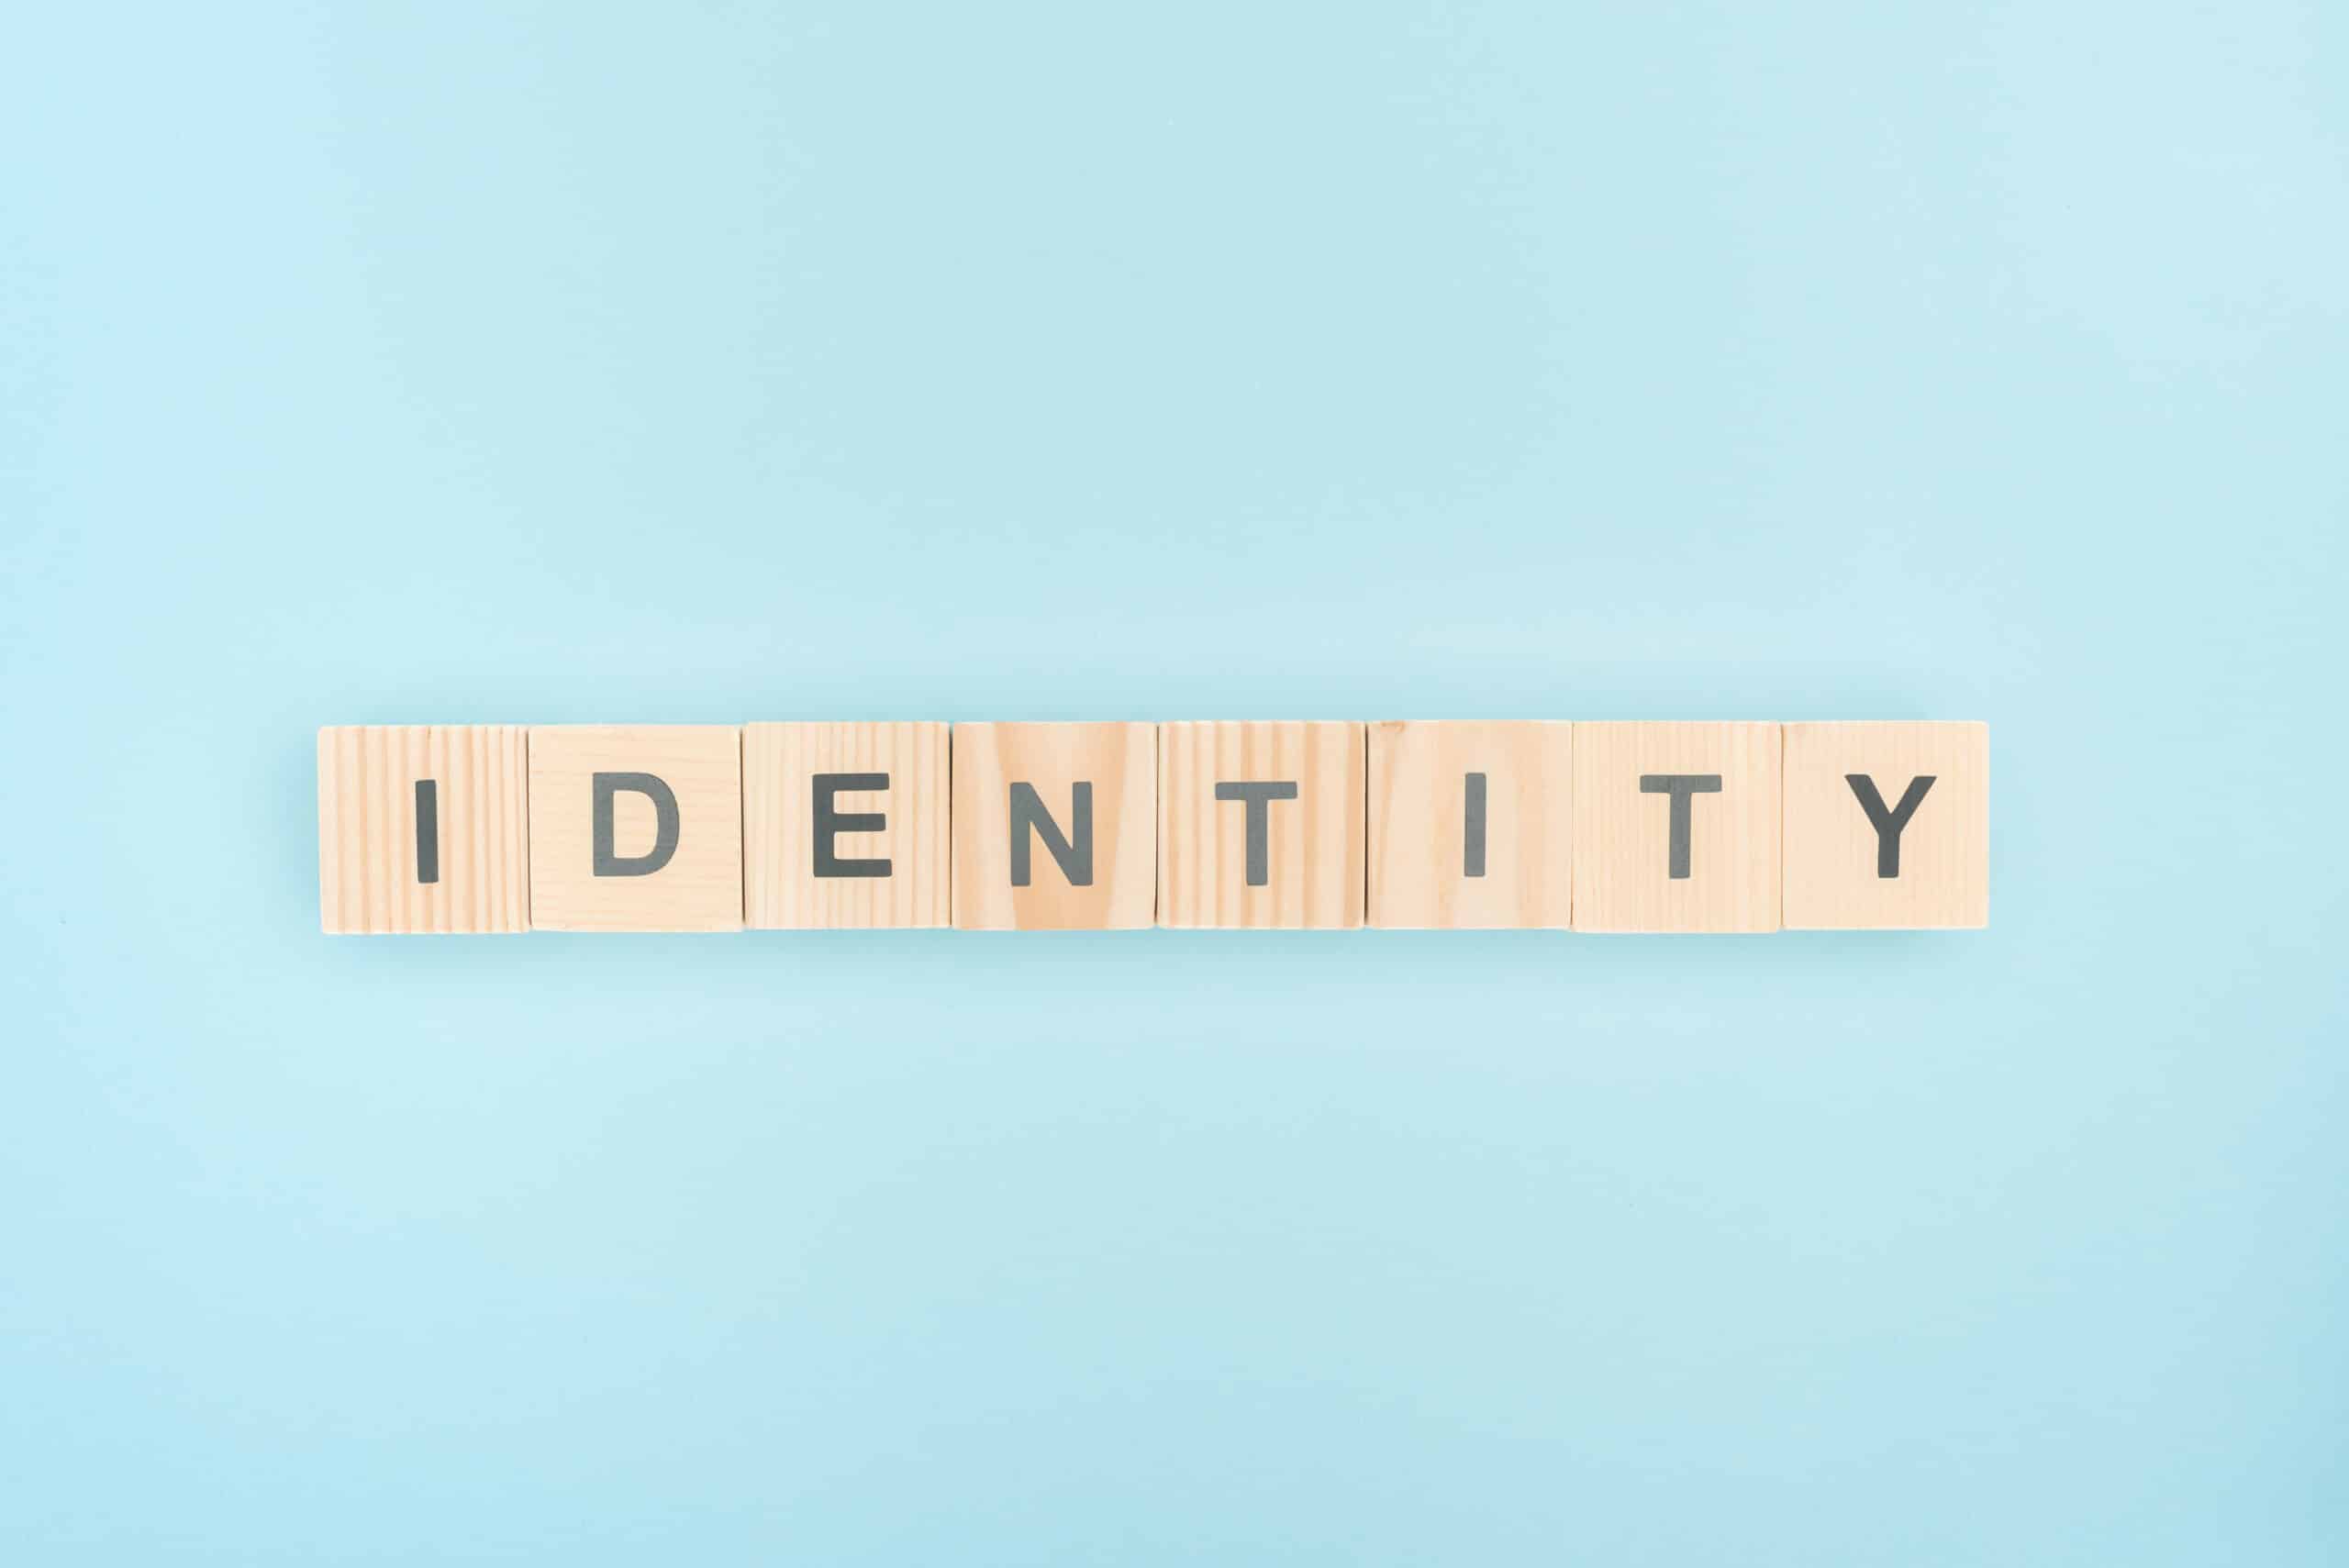 content identity